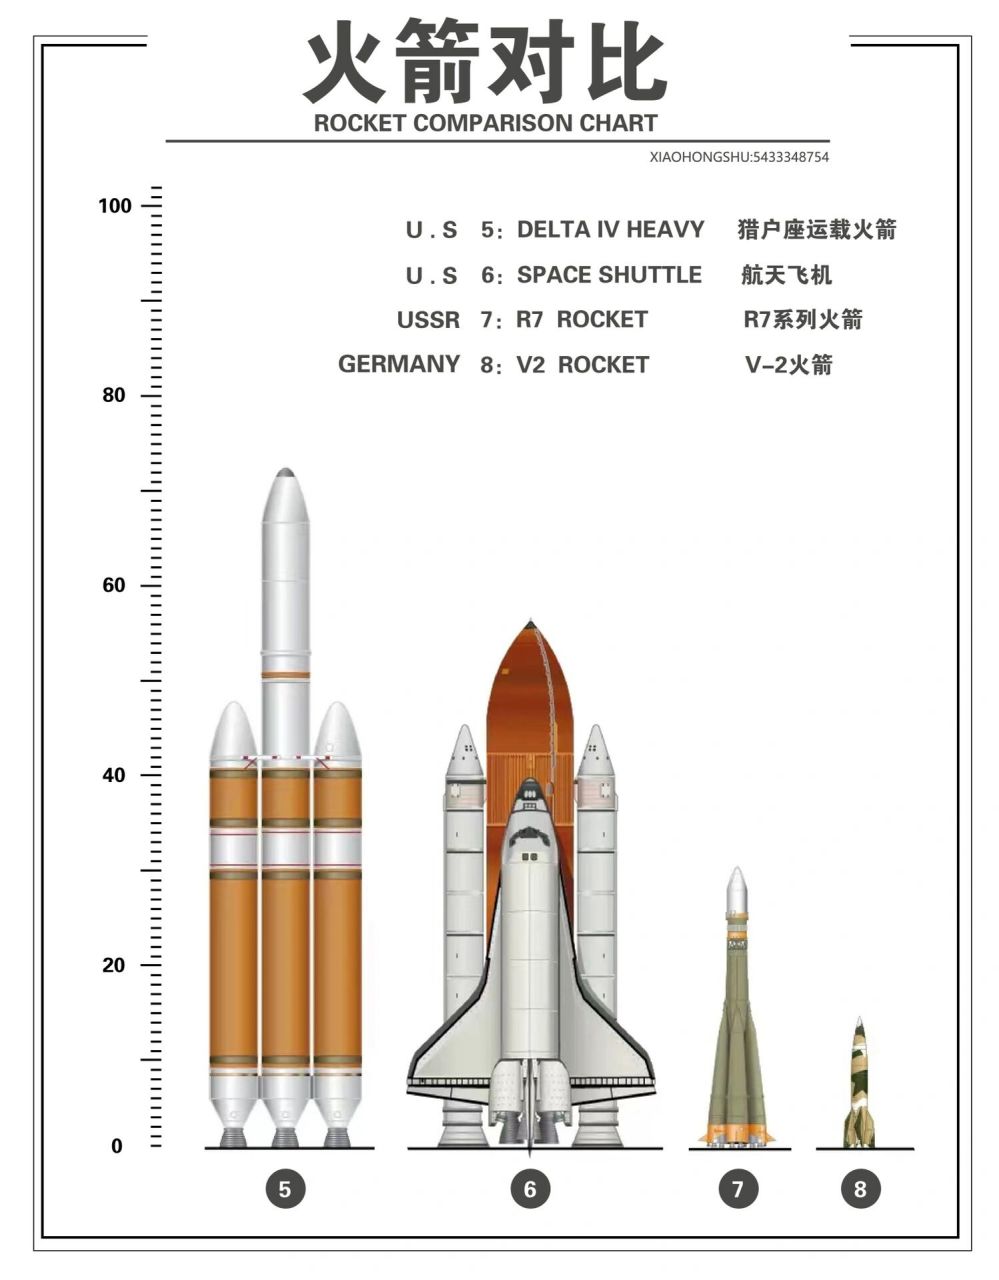 火箭对比图 1:土星五号一般指土星5号运载火箭(英文:saturn v)亦称为